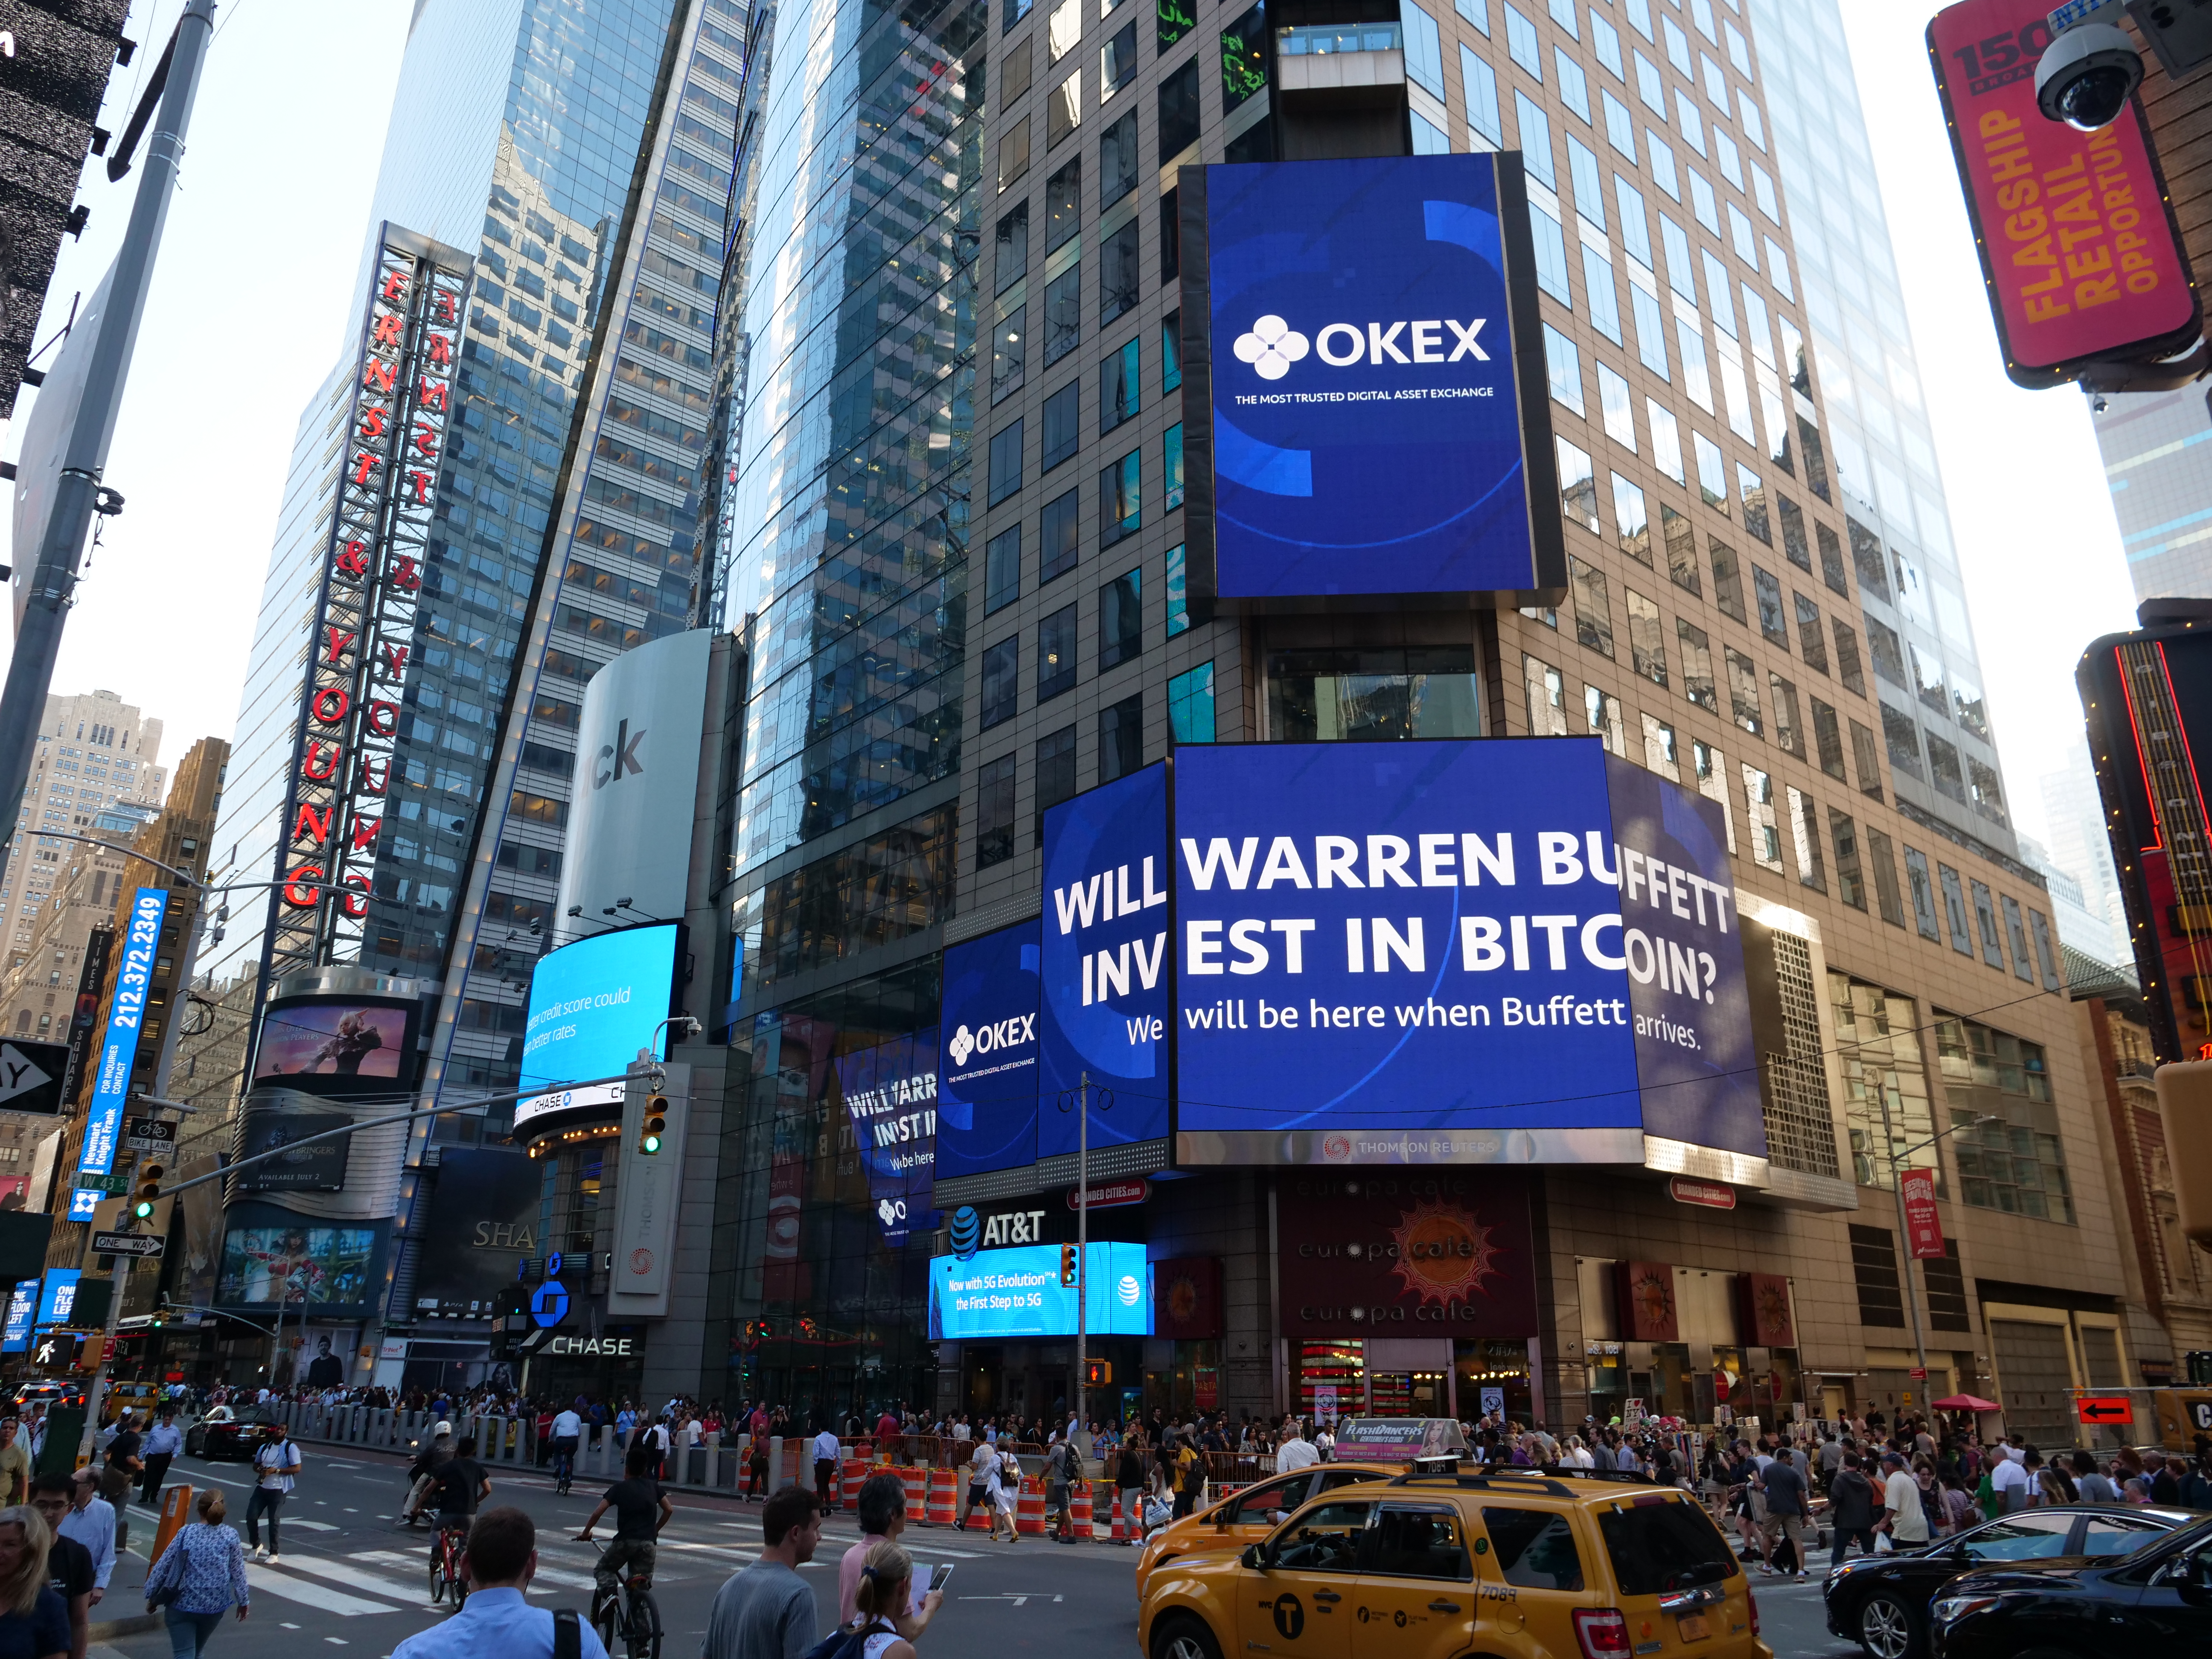 OKEx, 뉴욕 타임스웨어 광고판에 등장